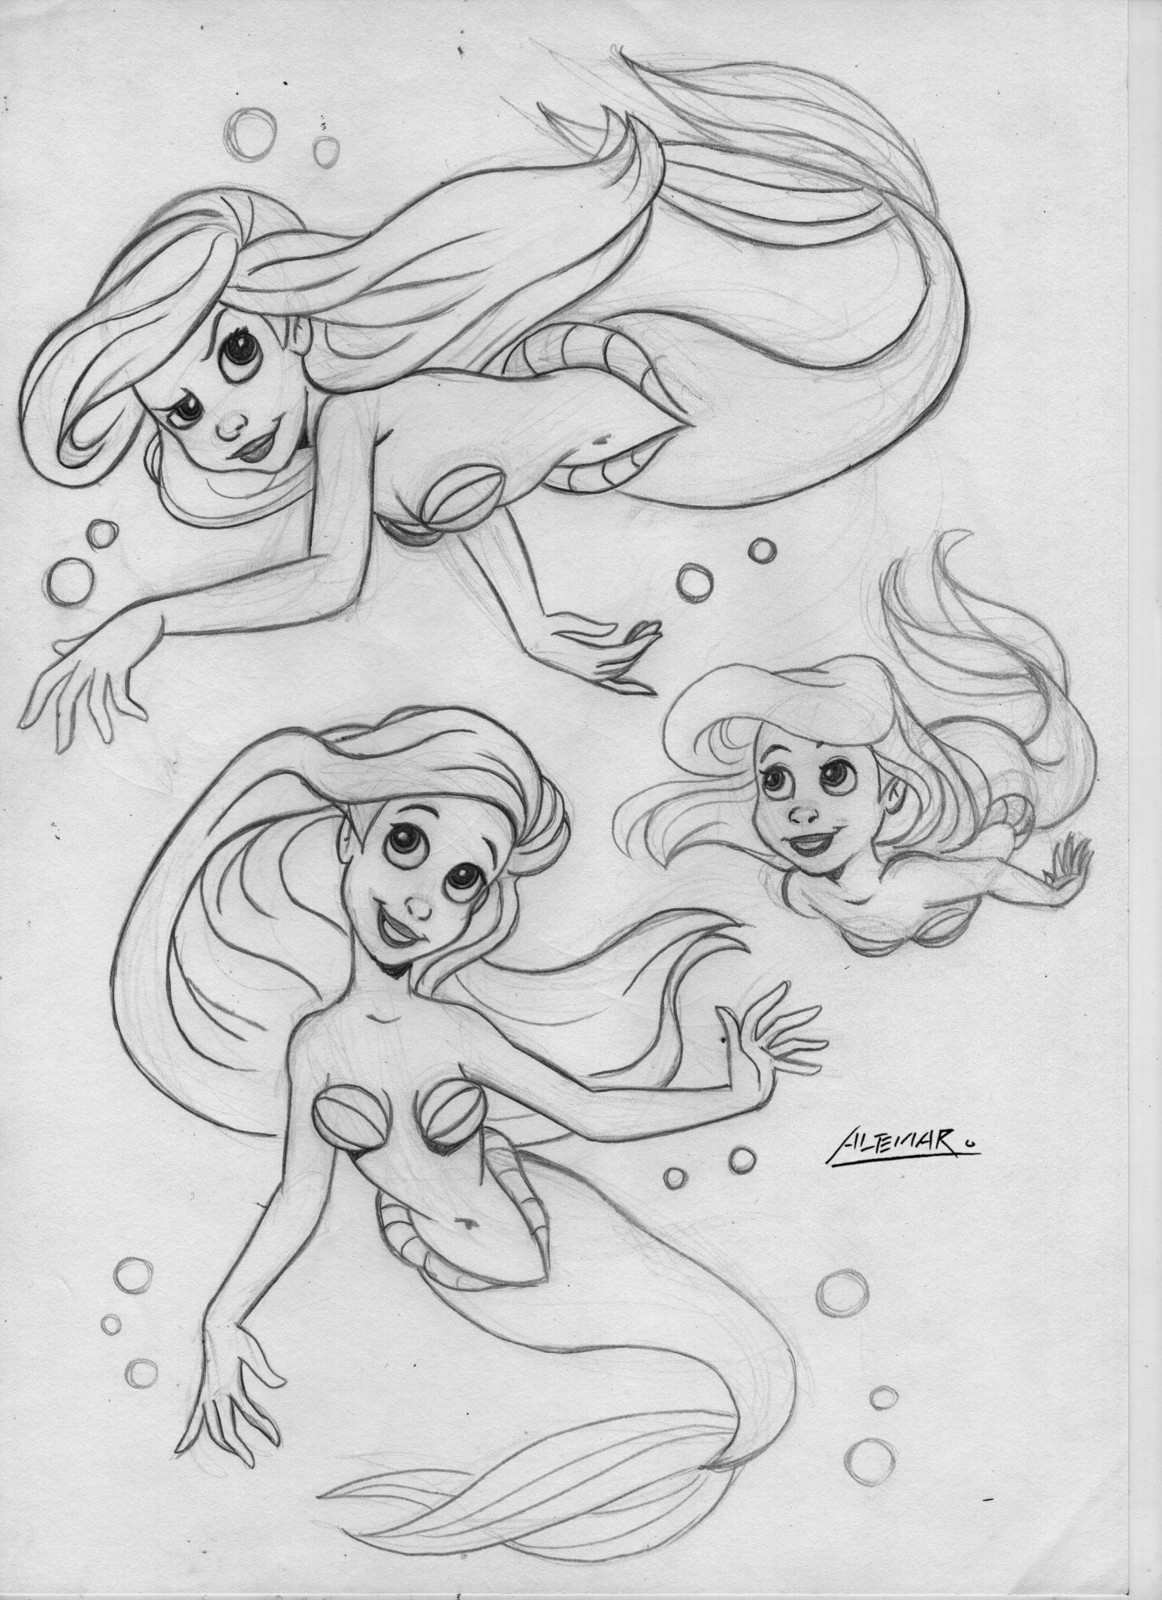 Ariel -  Sketch with pencil